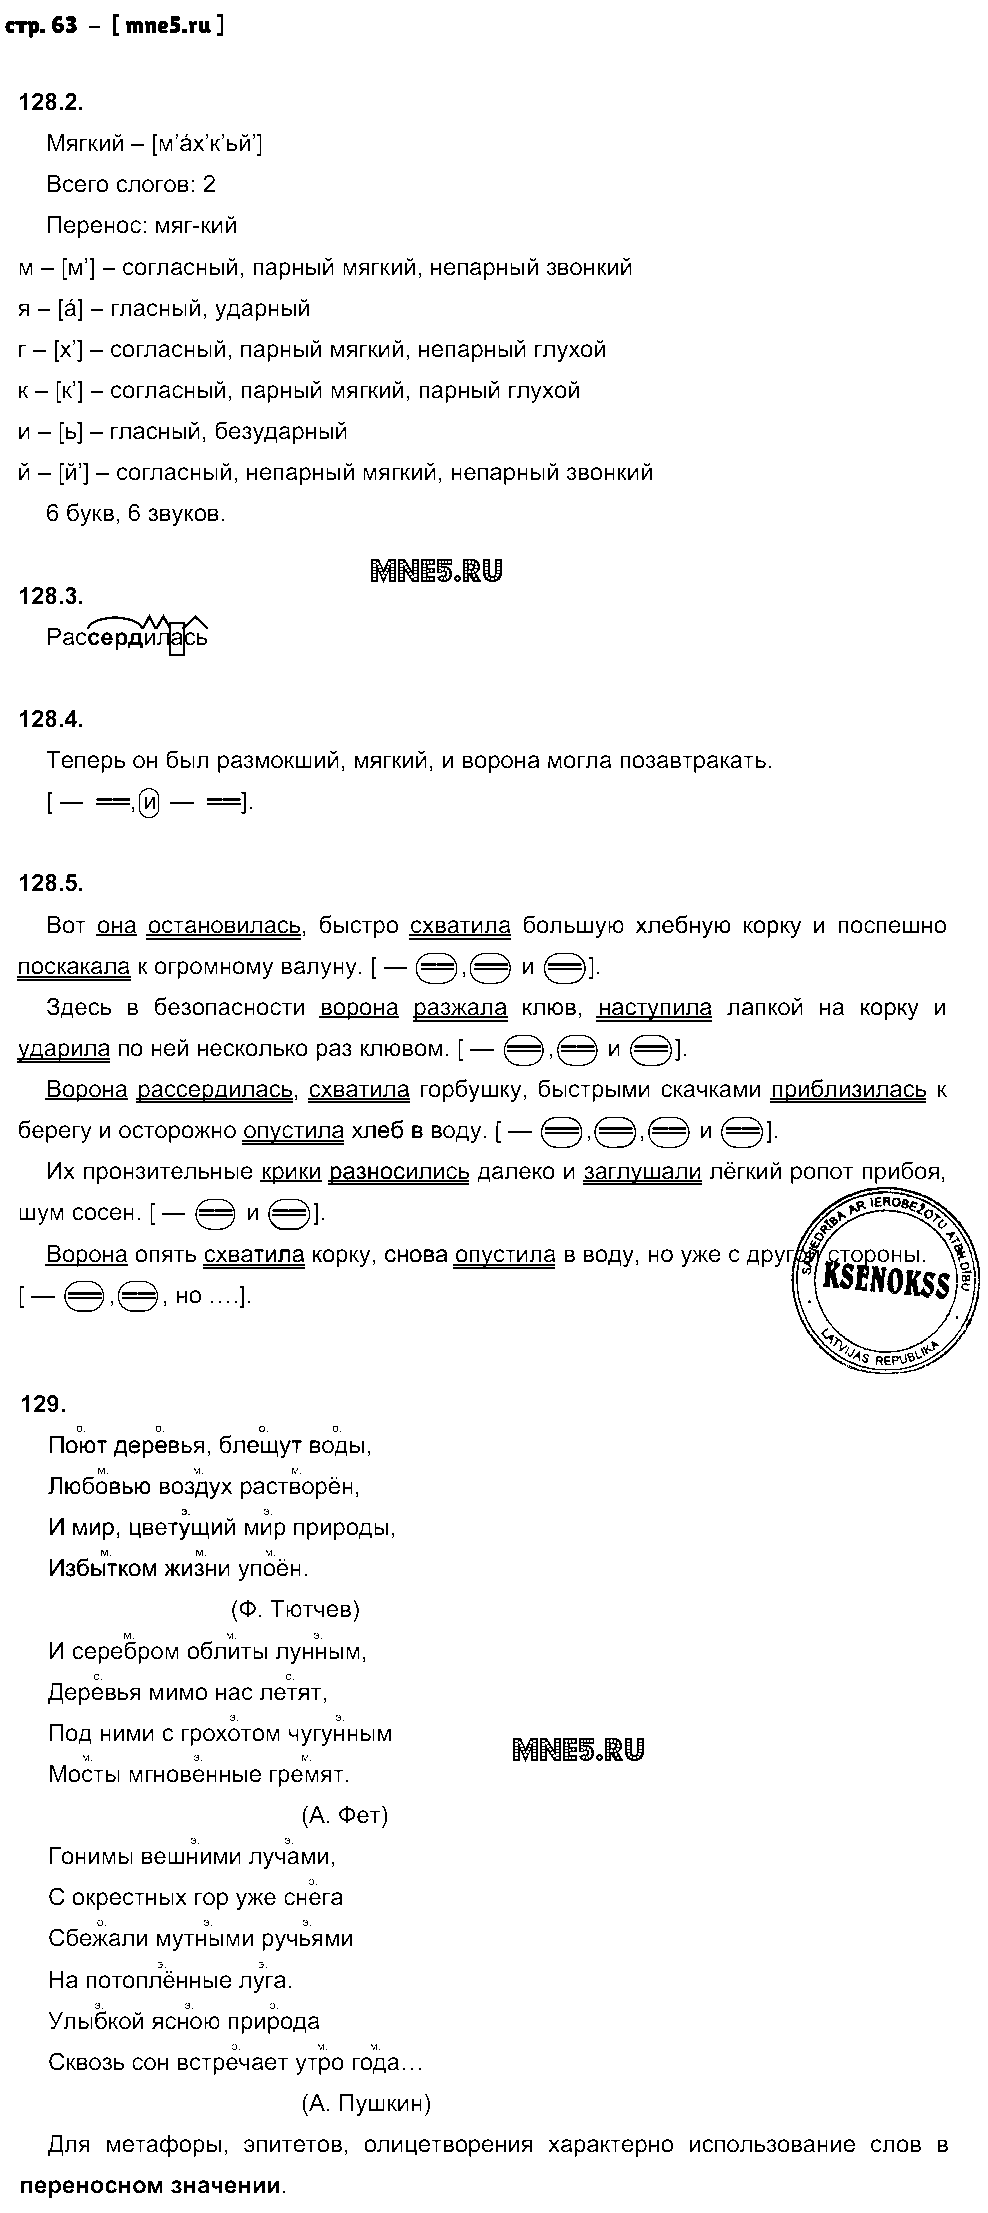 ГДЗ Русский язык 5 класс - стр. 63